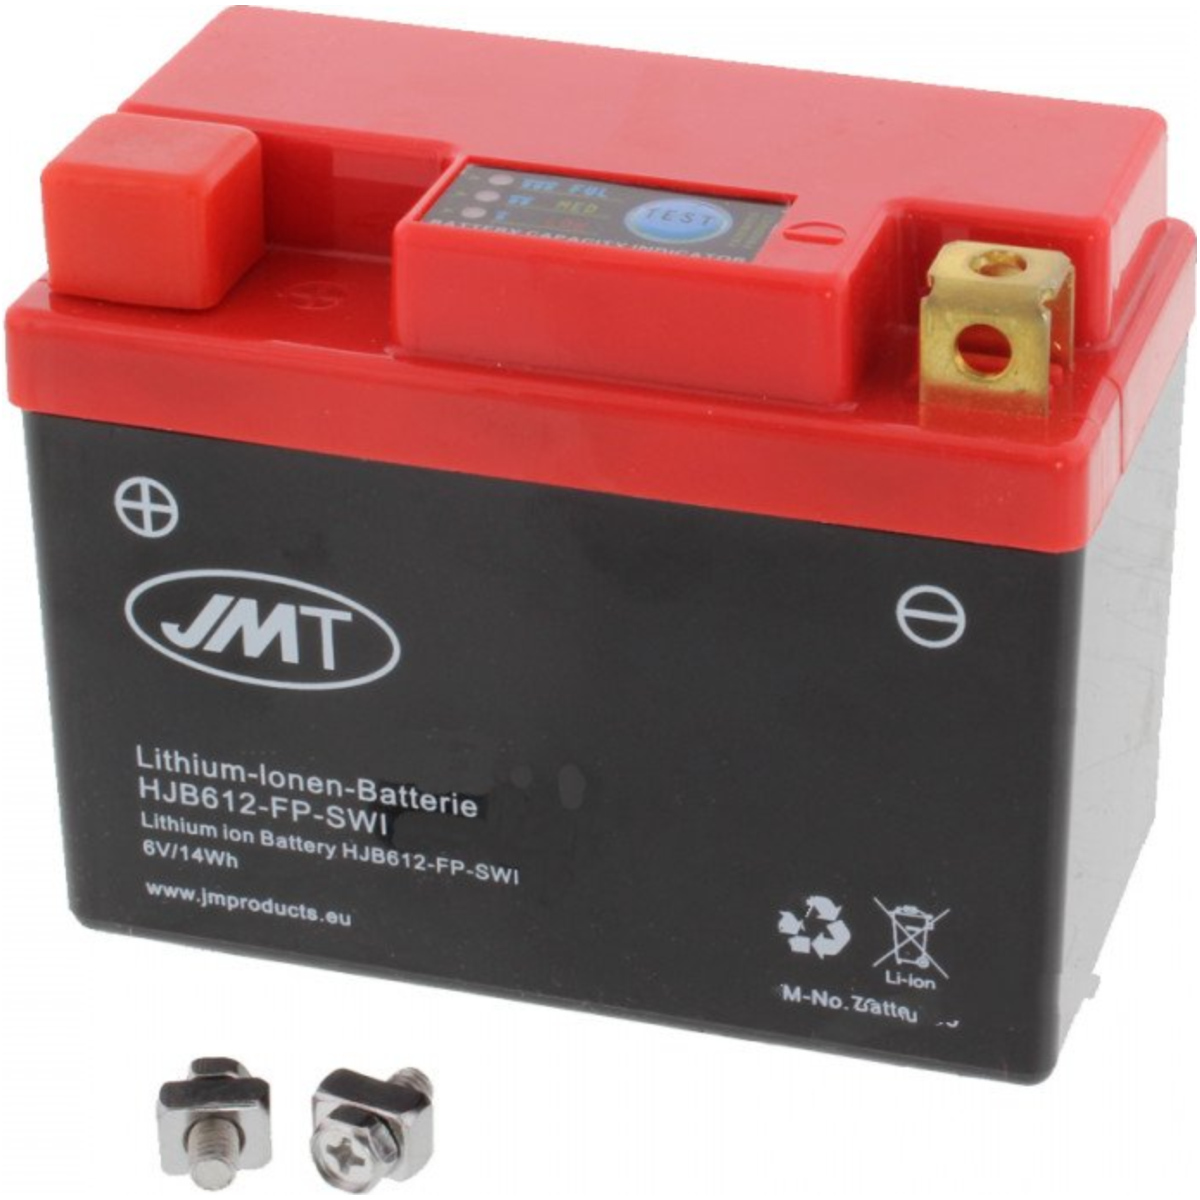 Jmt hjb612-fp-swi motorradbatterie hjb612-fp 6v von JMT